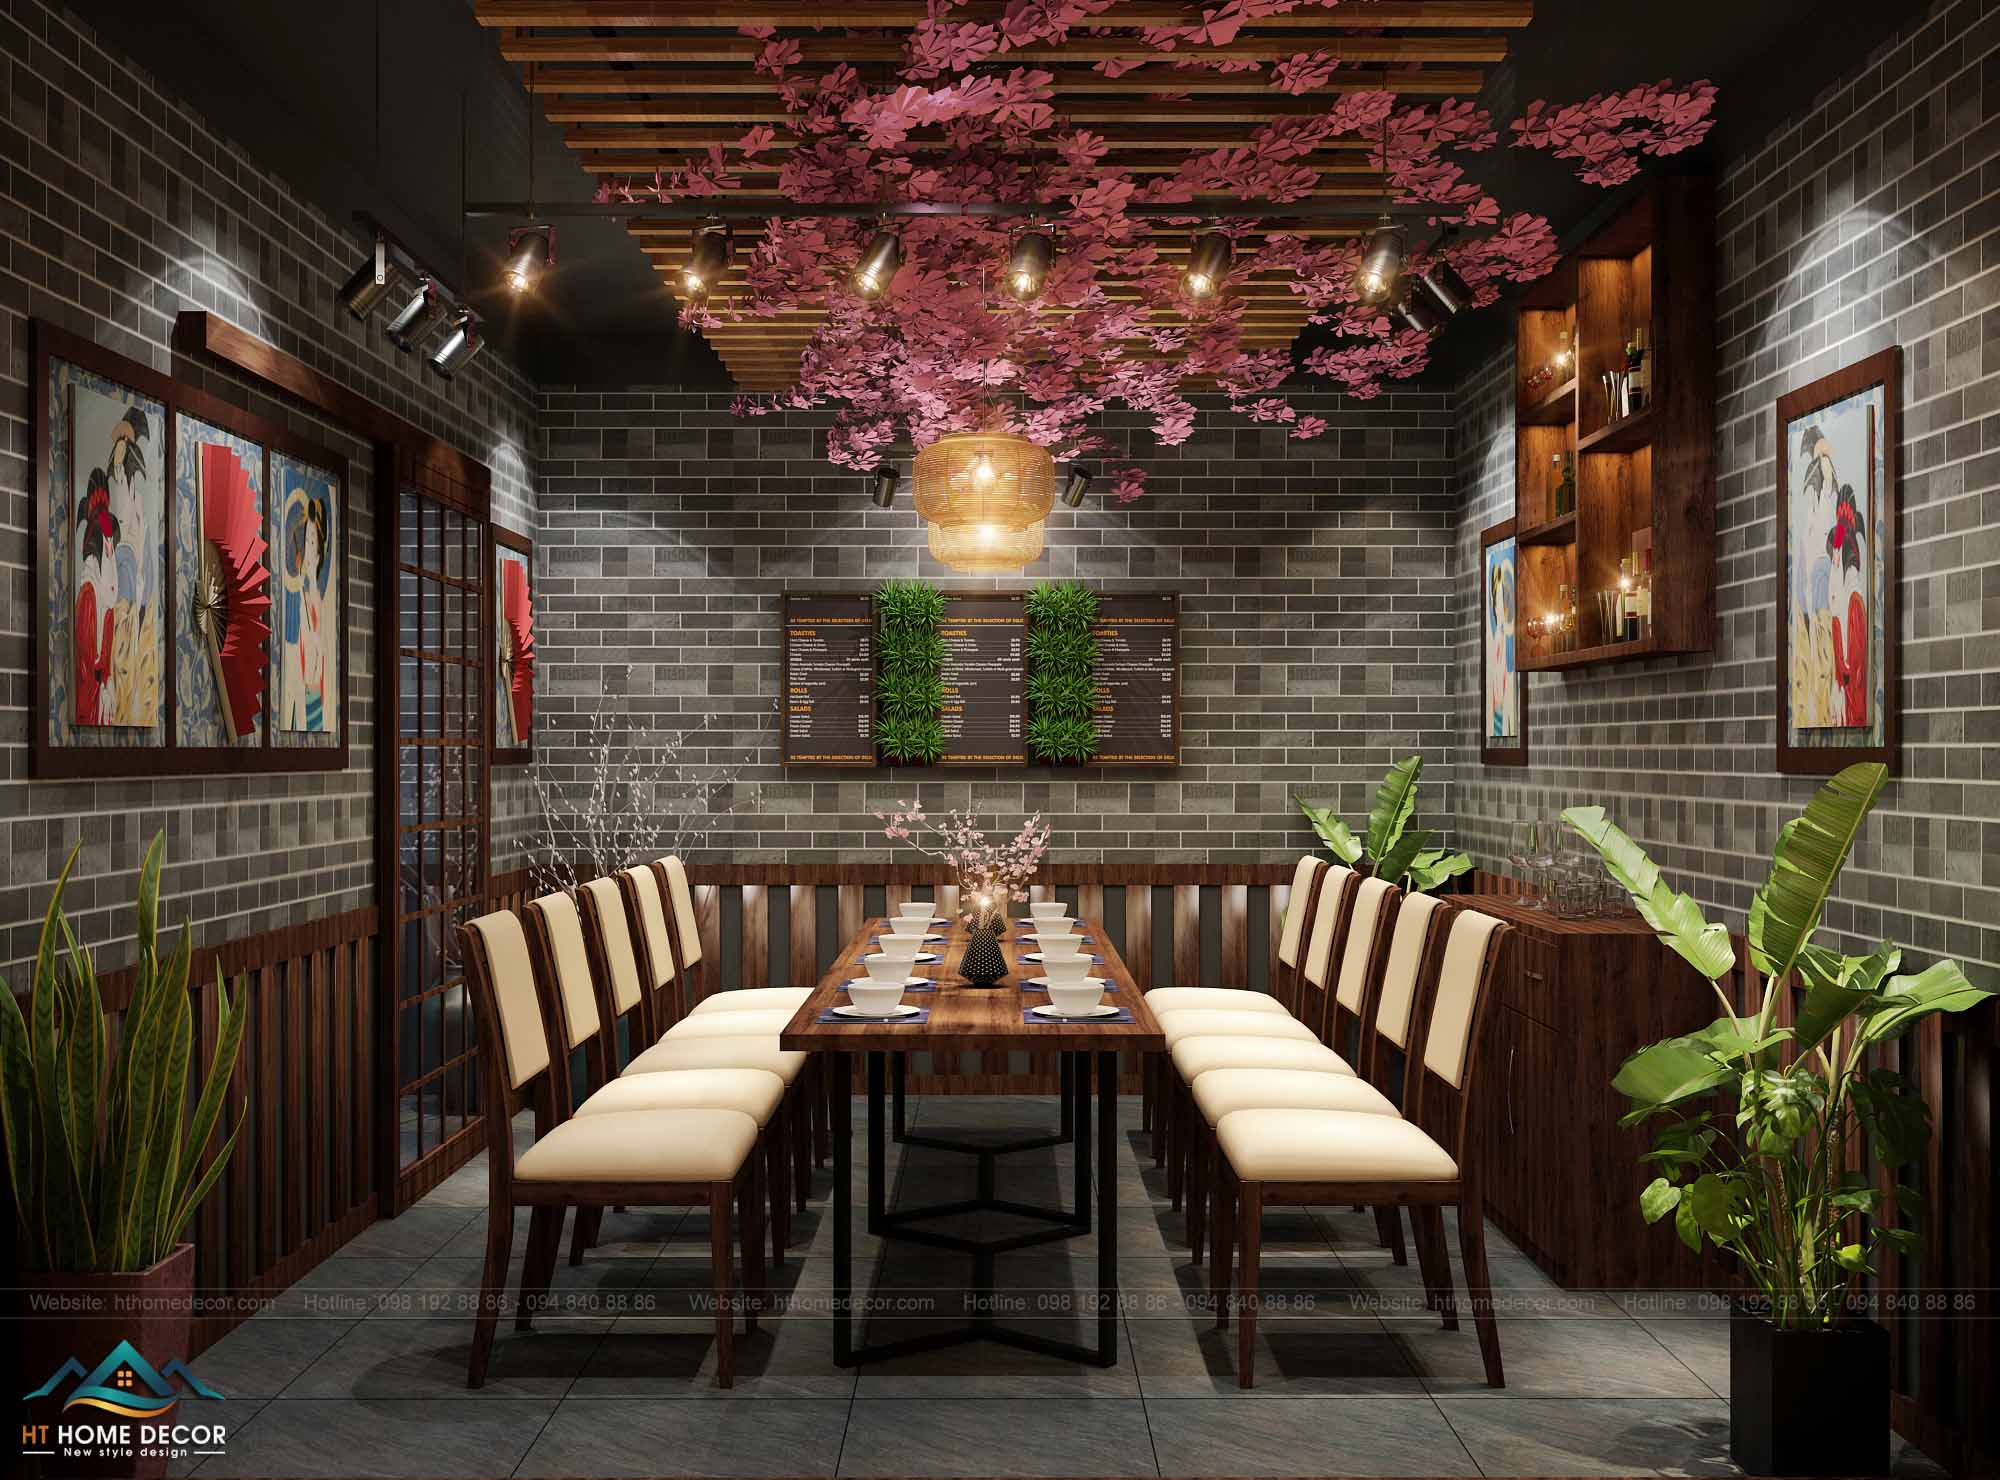 12.	Menu sang trọng của nhà hàng Nhật được gắn trên tường. Vừa để trang trí vừa tiện lợi cho khách order các món ăn.